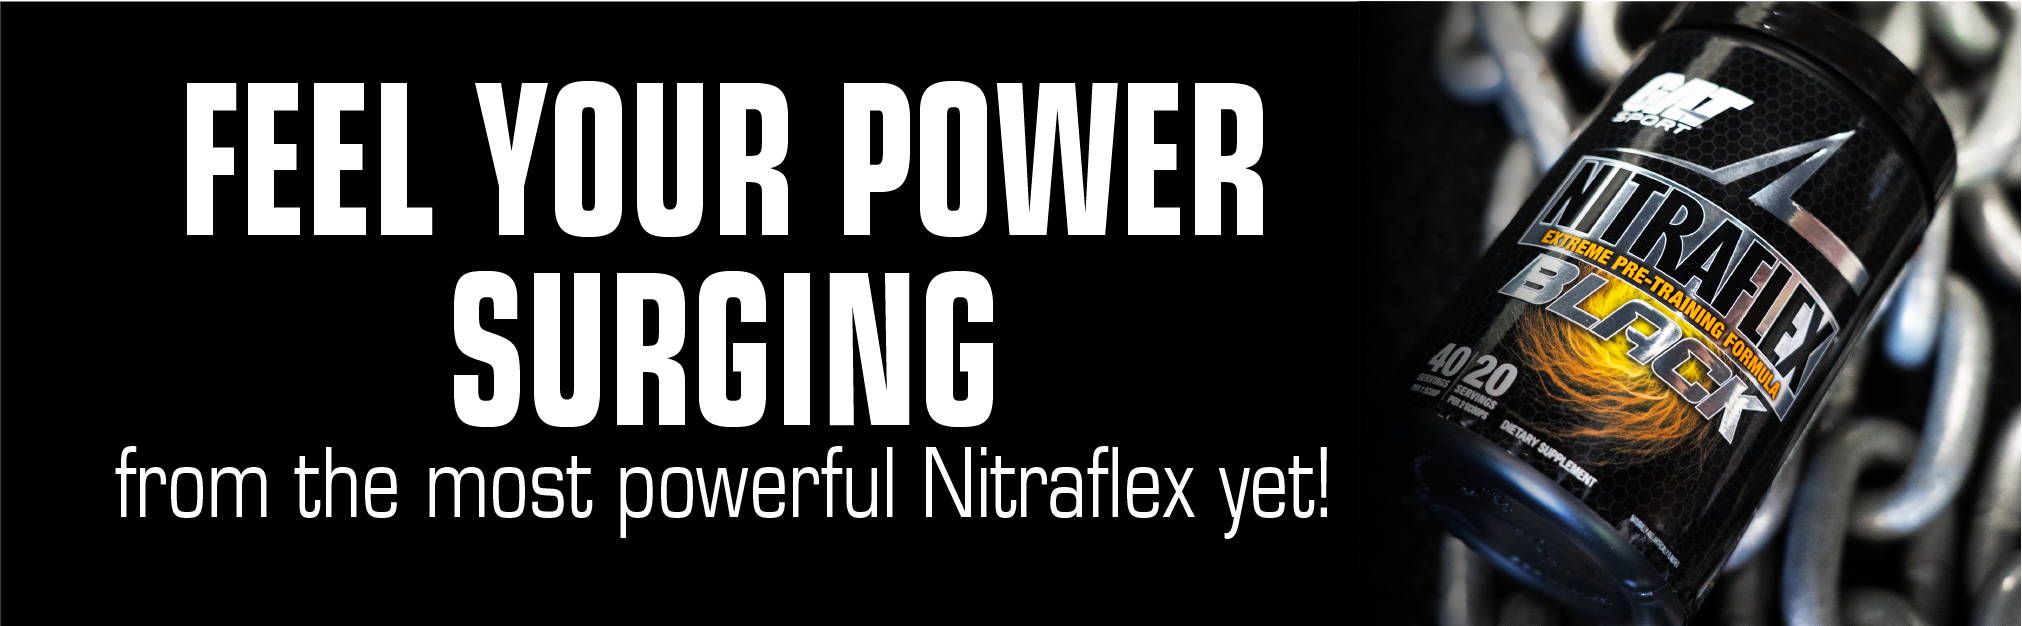 Siente tu poder surgiendo del Nitraflex más potente hasta el momento.